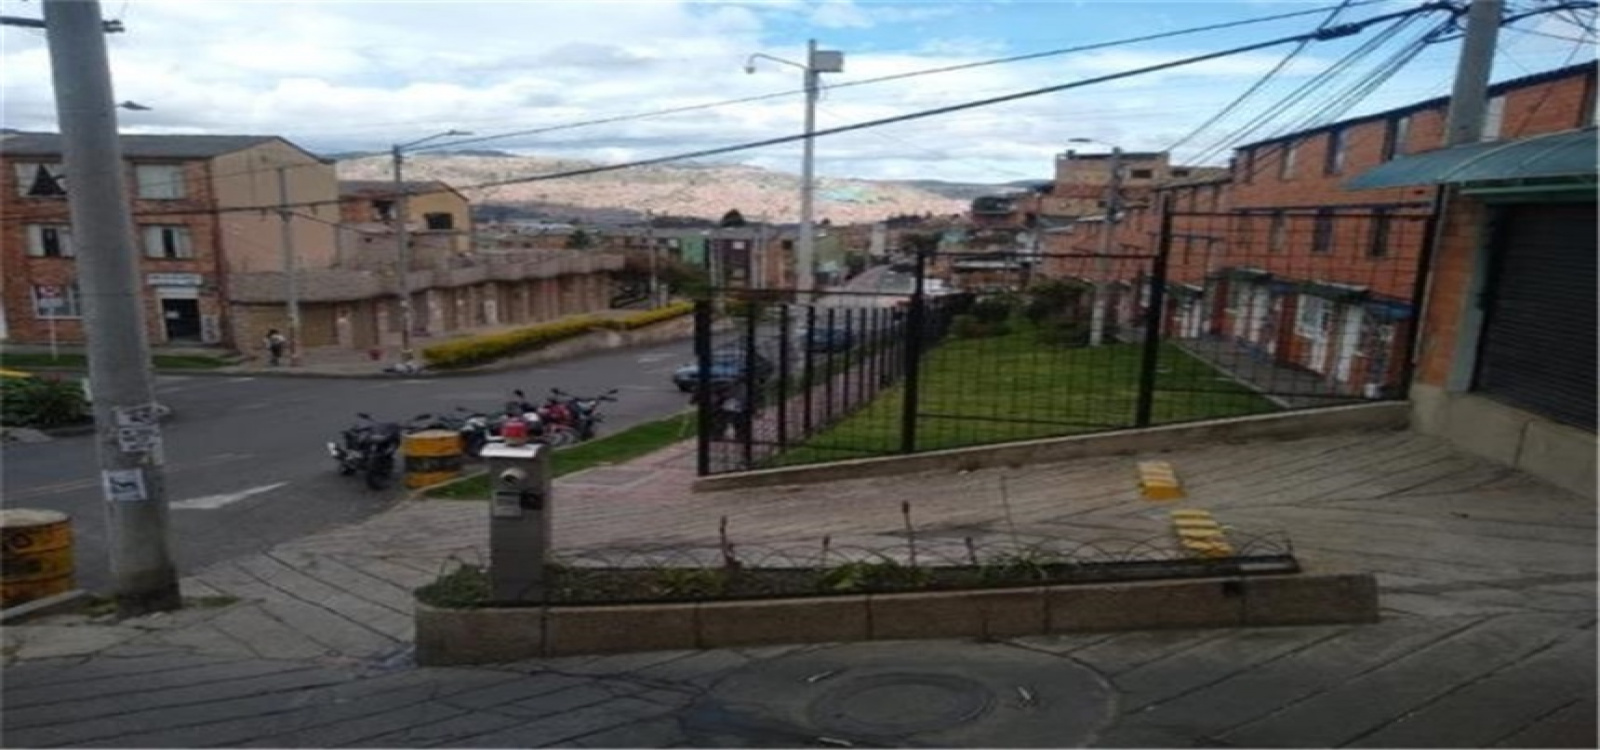 1 96 DIAGONAL 48 J SUR, Bogotá, Sur, Bochica Sur, 2 Habitaciones Habitaciones,2 BathroomsBathrooms,Casas,Venta,SAN CAYETANO,DIAGONAL 48 J SUR,2920